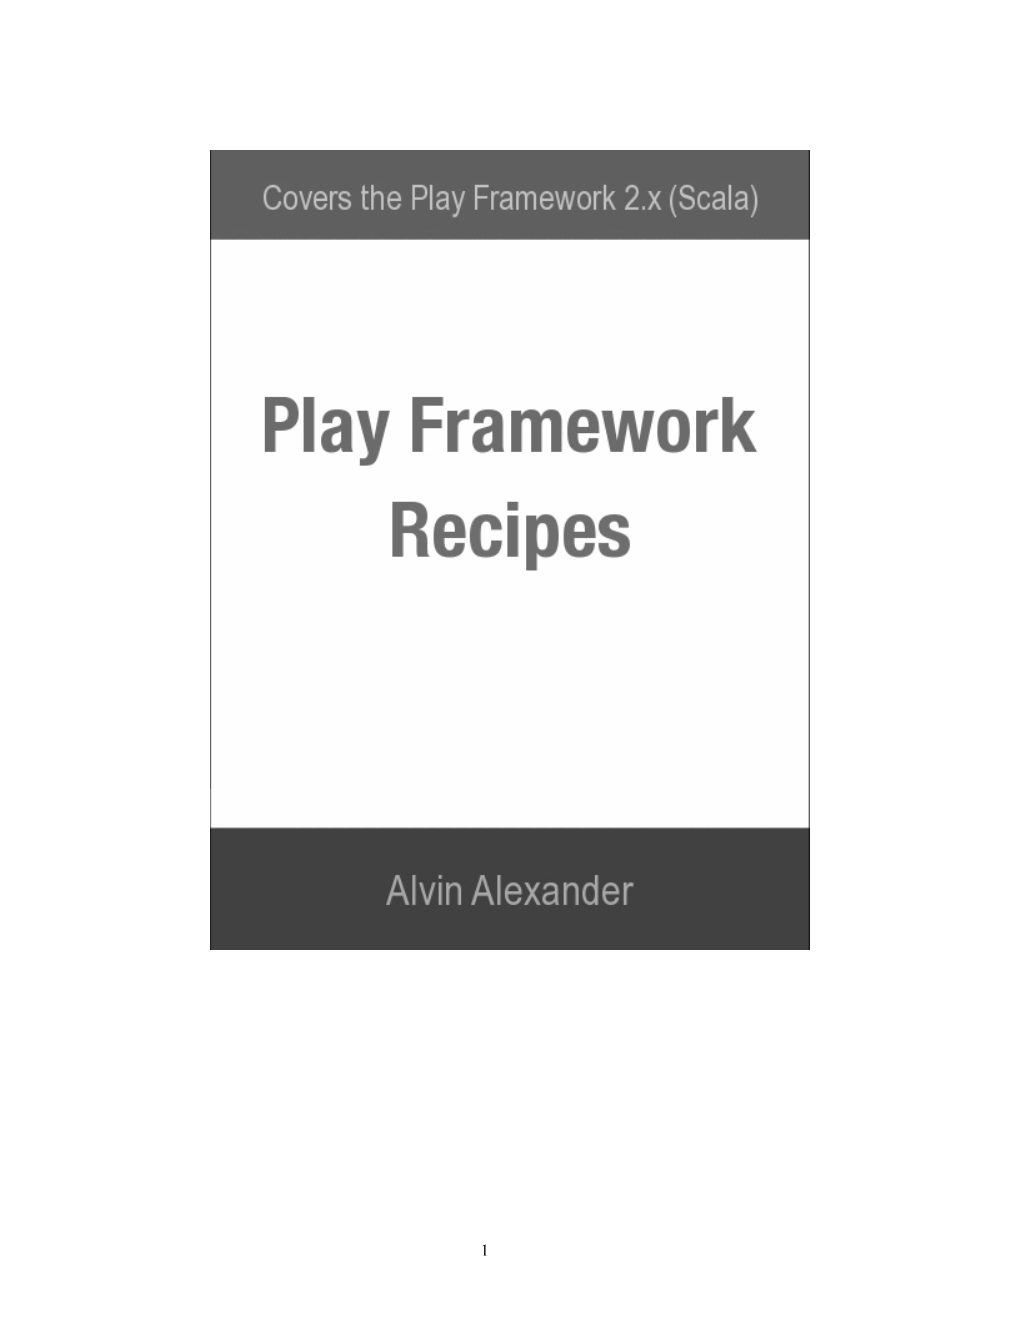 Play Framework Recipes V0.2